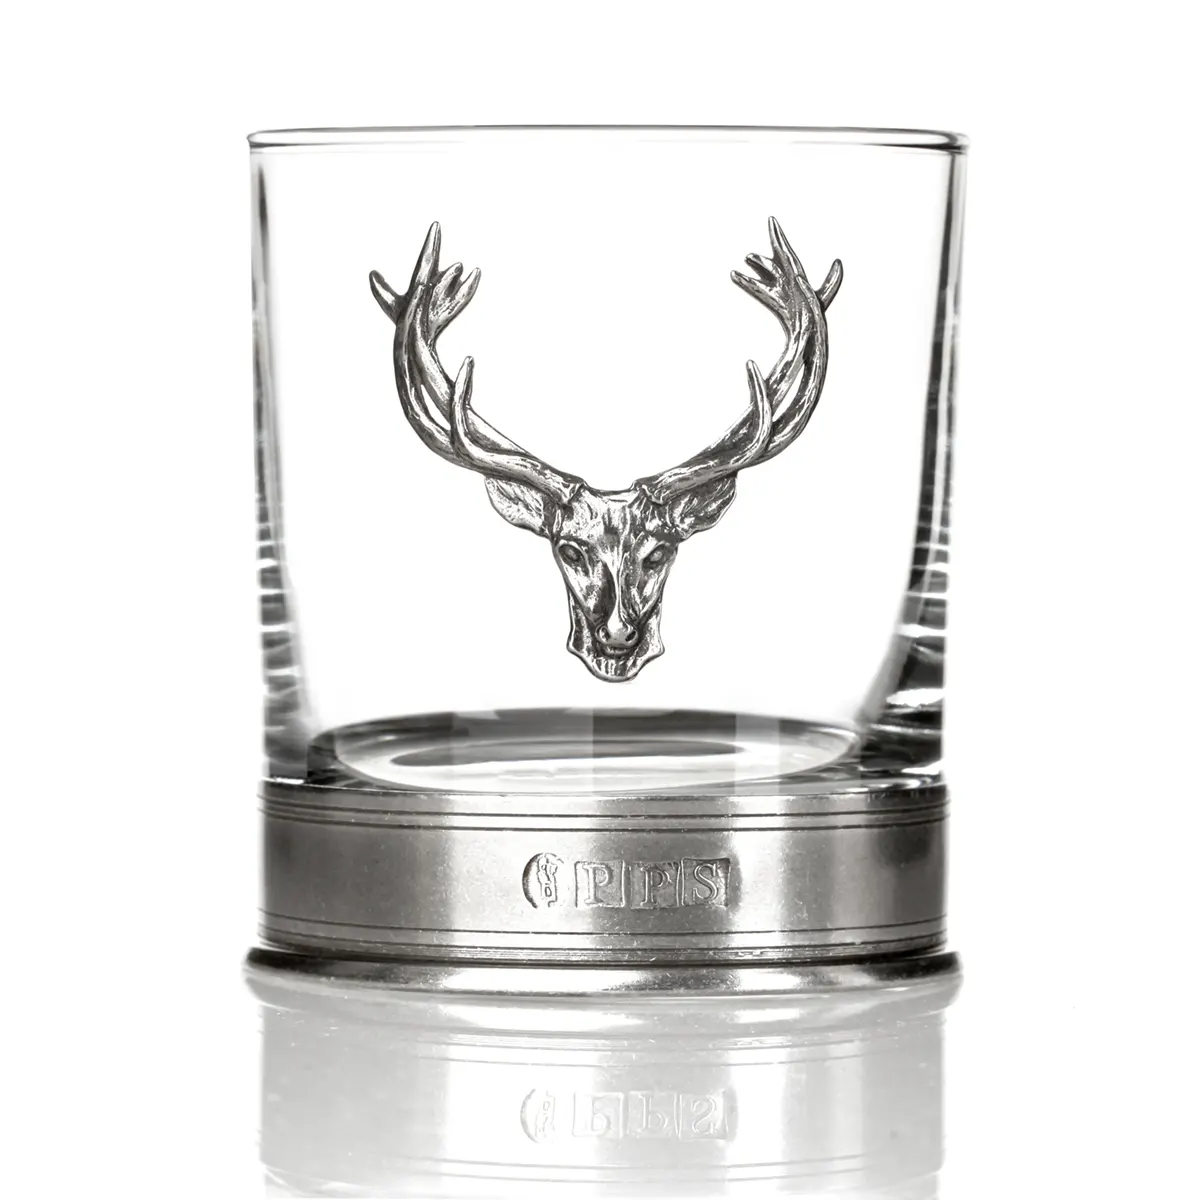 Highland Stag Whisky Tumbler - Handgefertigtes Whisky Glas mit einem Hirschkopf aus Zinn